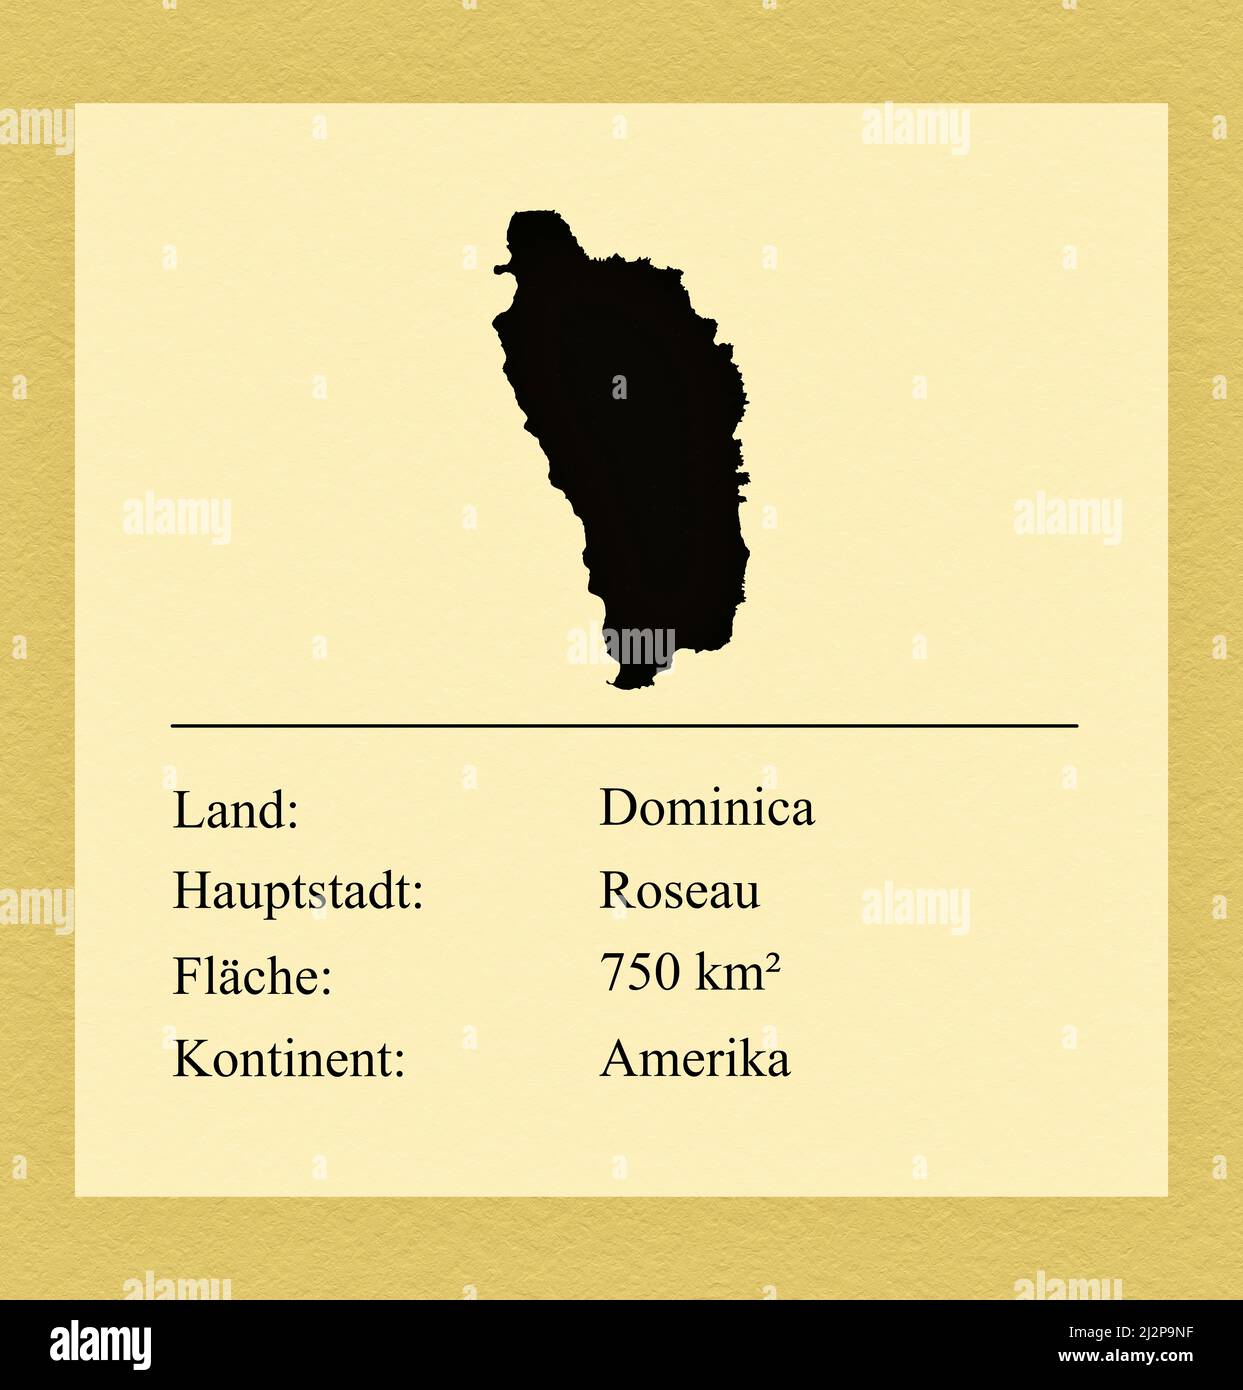 Umrisse des Landes Dominica, darunter ein kleiner Steckbrief mit Ländernamen, Hauptstadt, Fläche und Kontinent Foto de stock